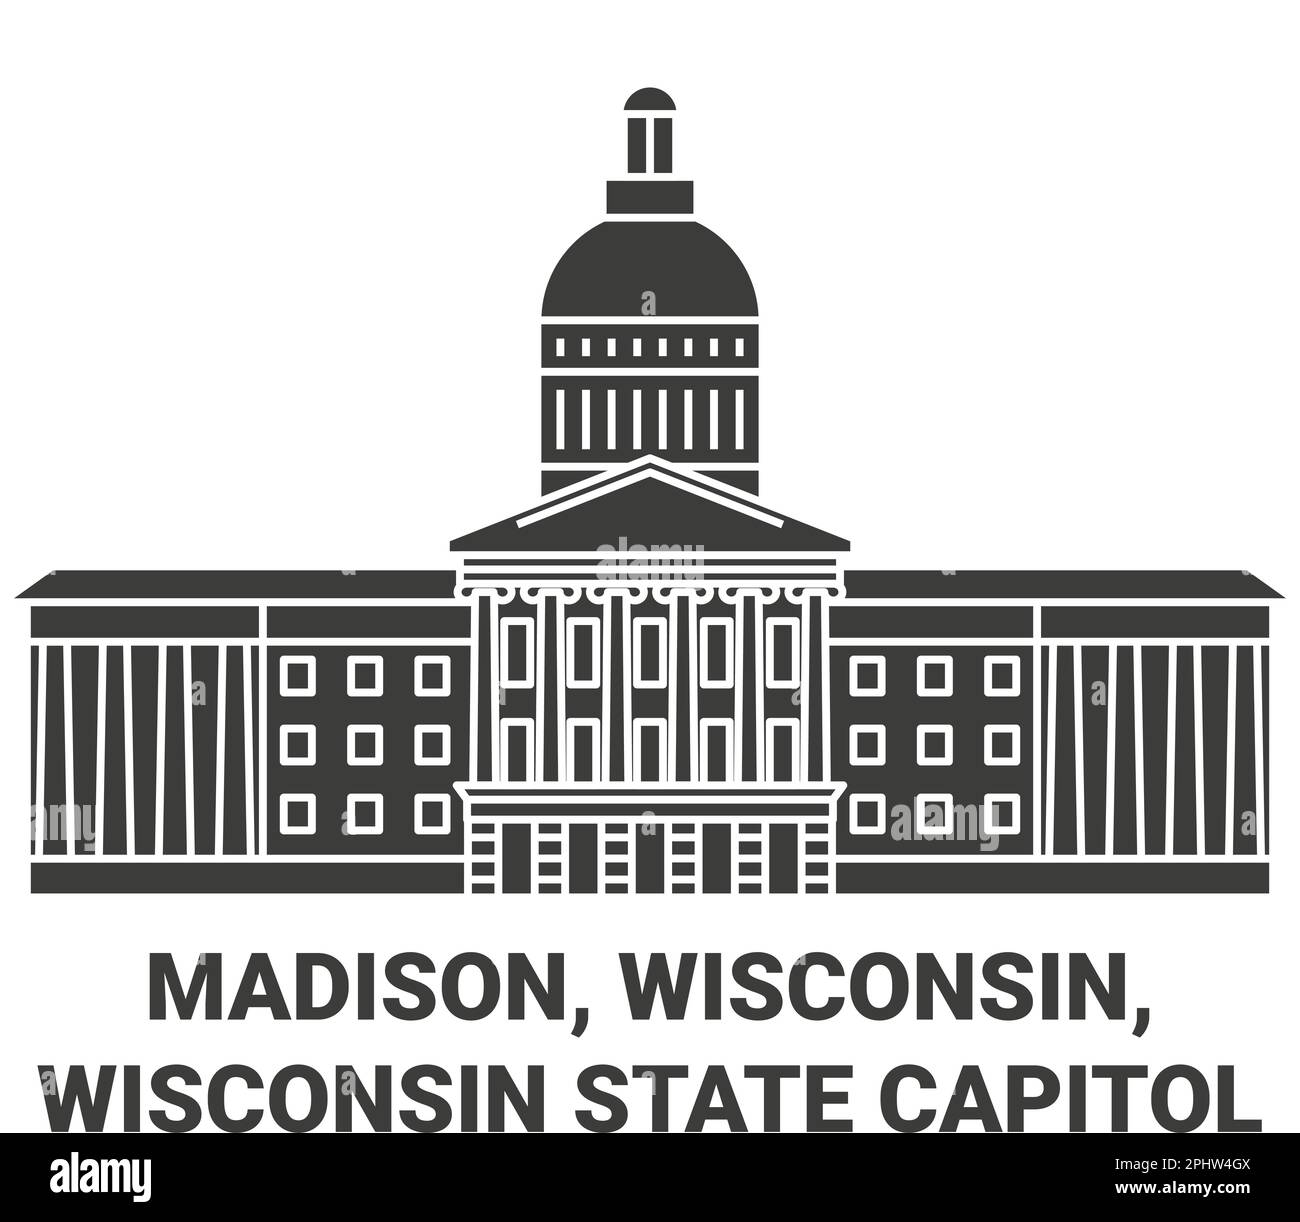 États-Unis, Madison, Wisconsin, Wisconsin, capitale de l'État du Wisconsin Voyage illustration du vecteur de repère Illustration de Vecteur